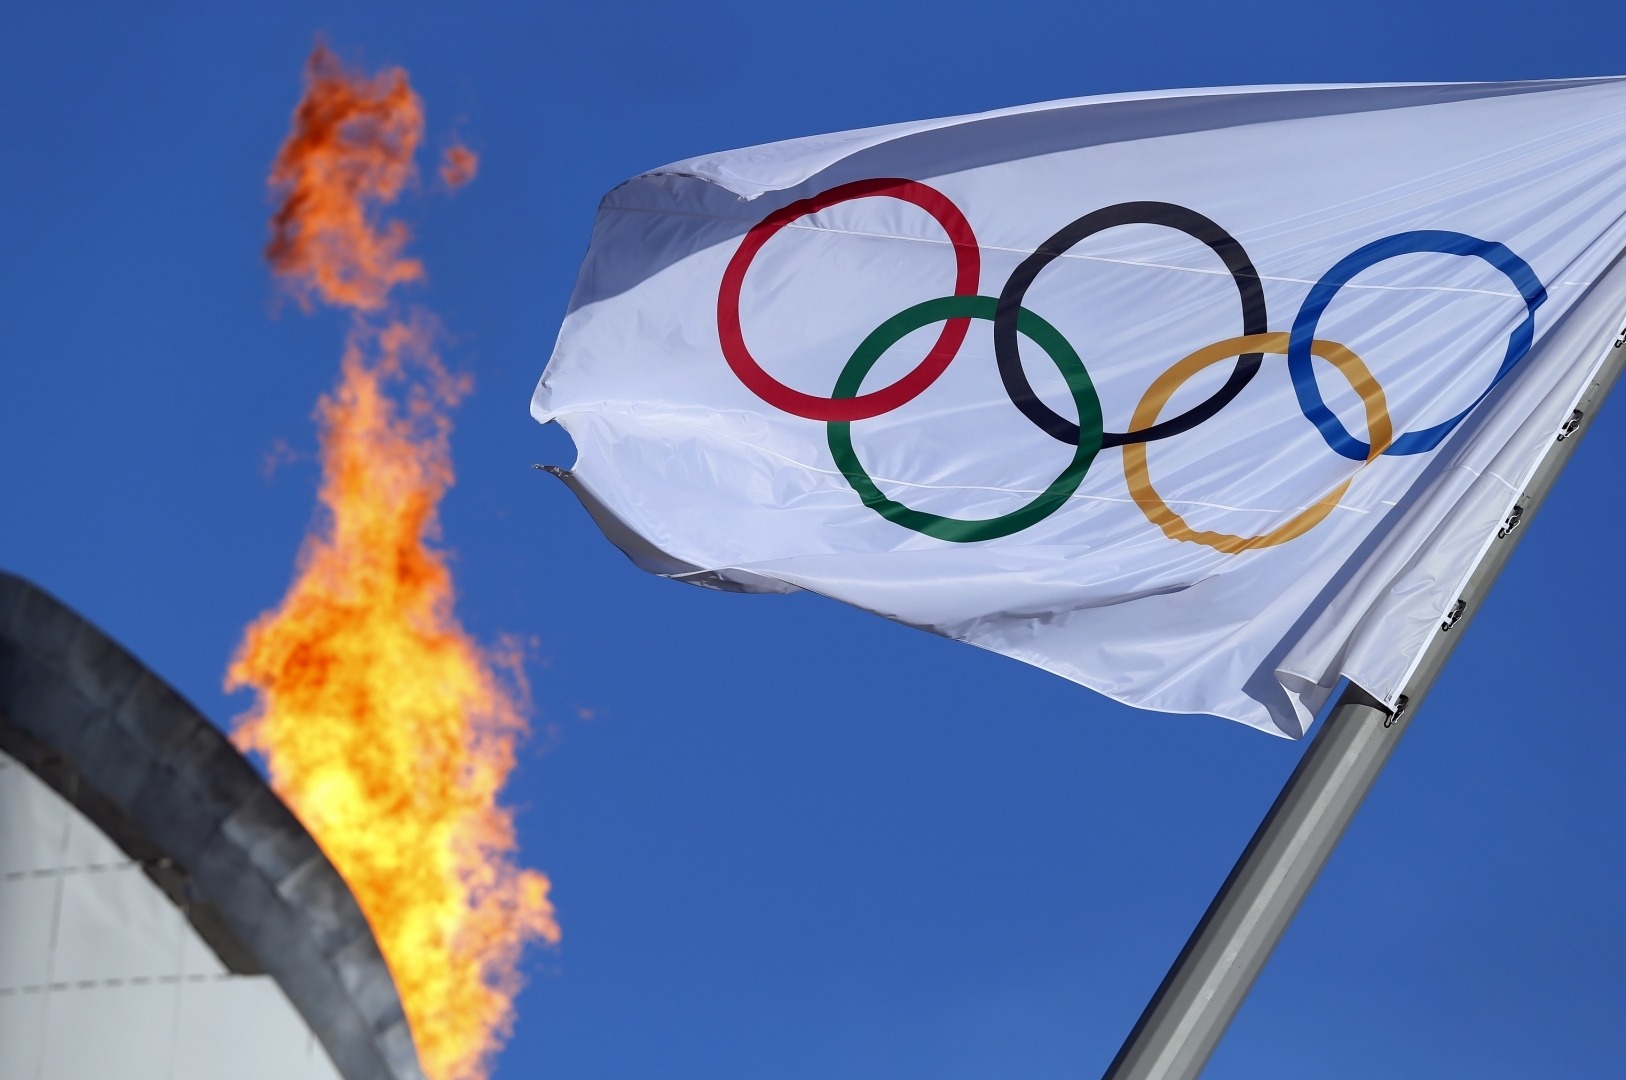  Україна націлилася на проведення літньої Олімпіади 2032 